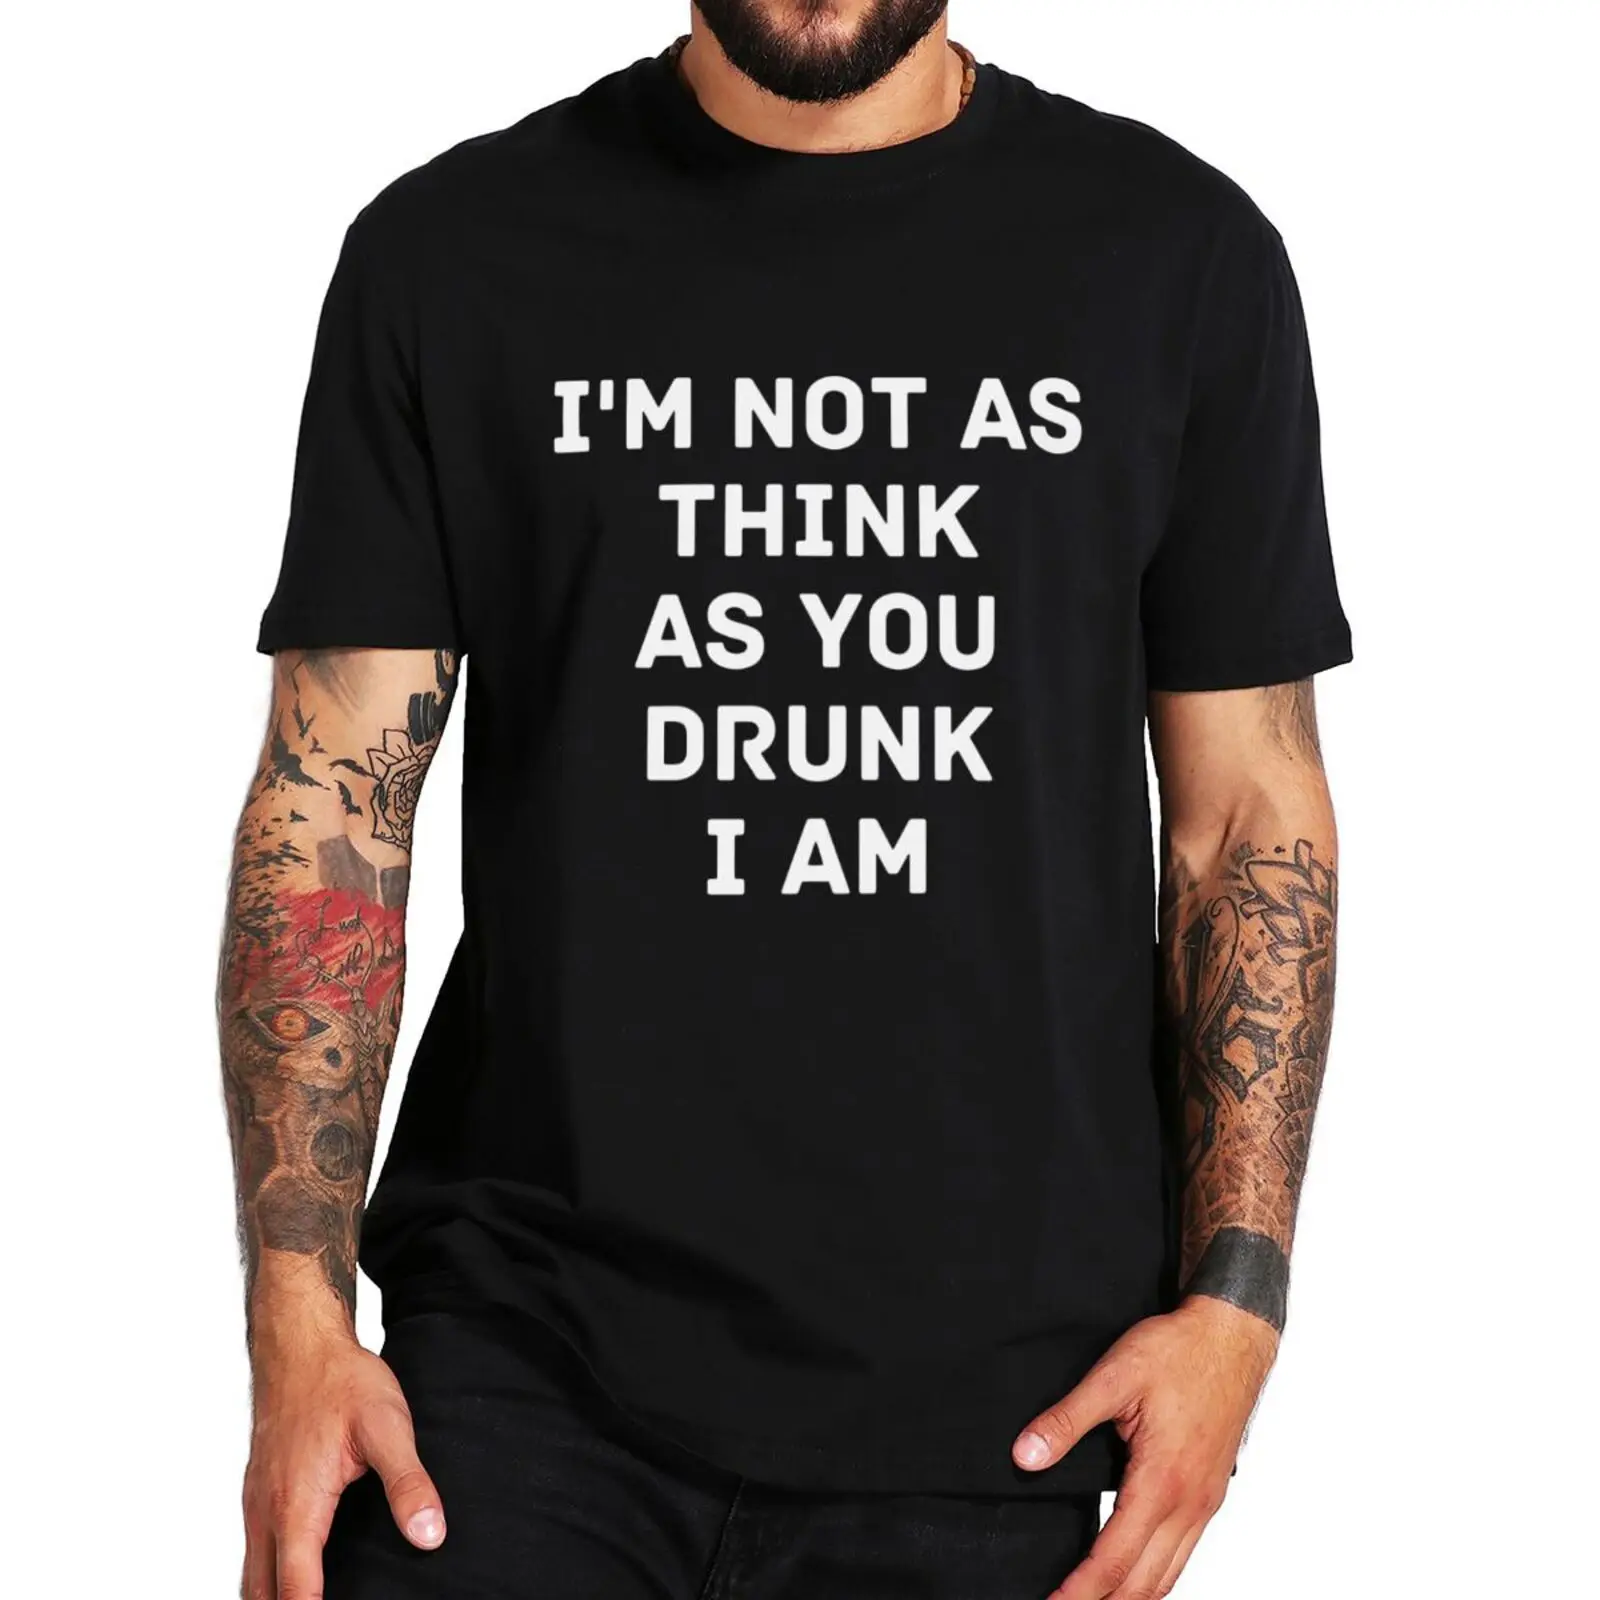 

Футболка с надписью «Я не так думаю, как вы пьян», забавные высказывания, смешная шутка с юмором, футболки для влюбленных с пивом, повседневн...